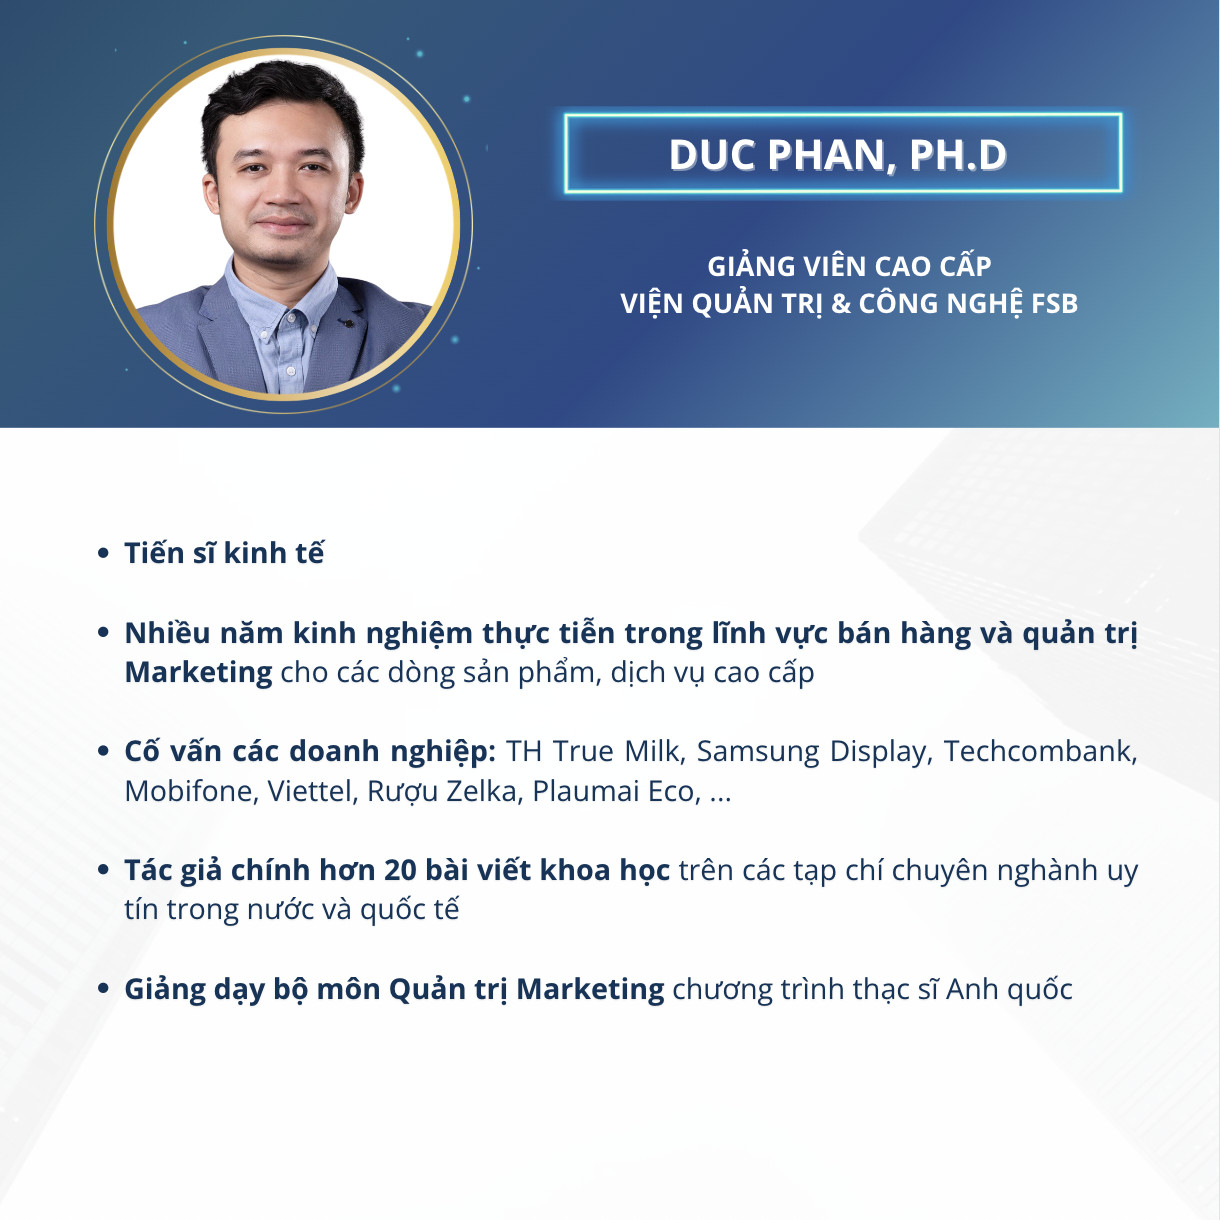 Duc Phan, Ph.D (Giảng viên khóa học CXM - Quản trị trải nghiệm khách hàng MSU & FPT)